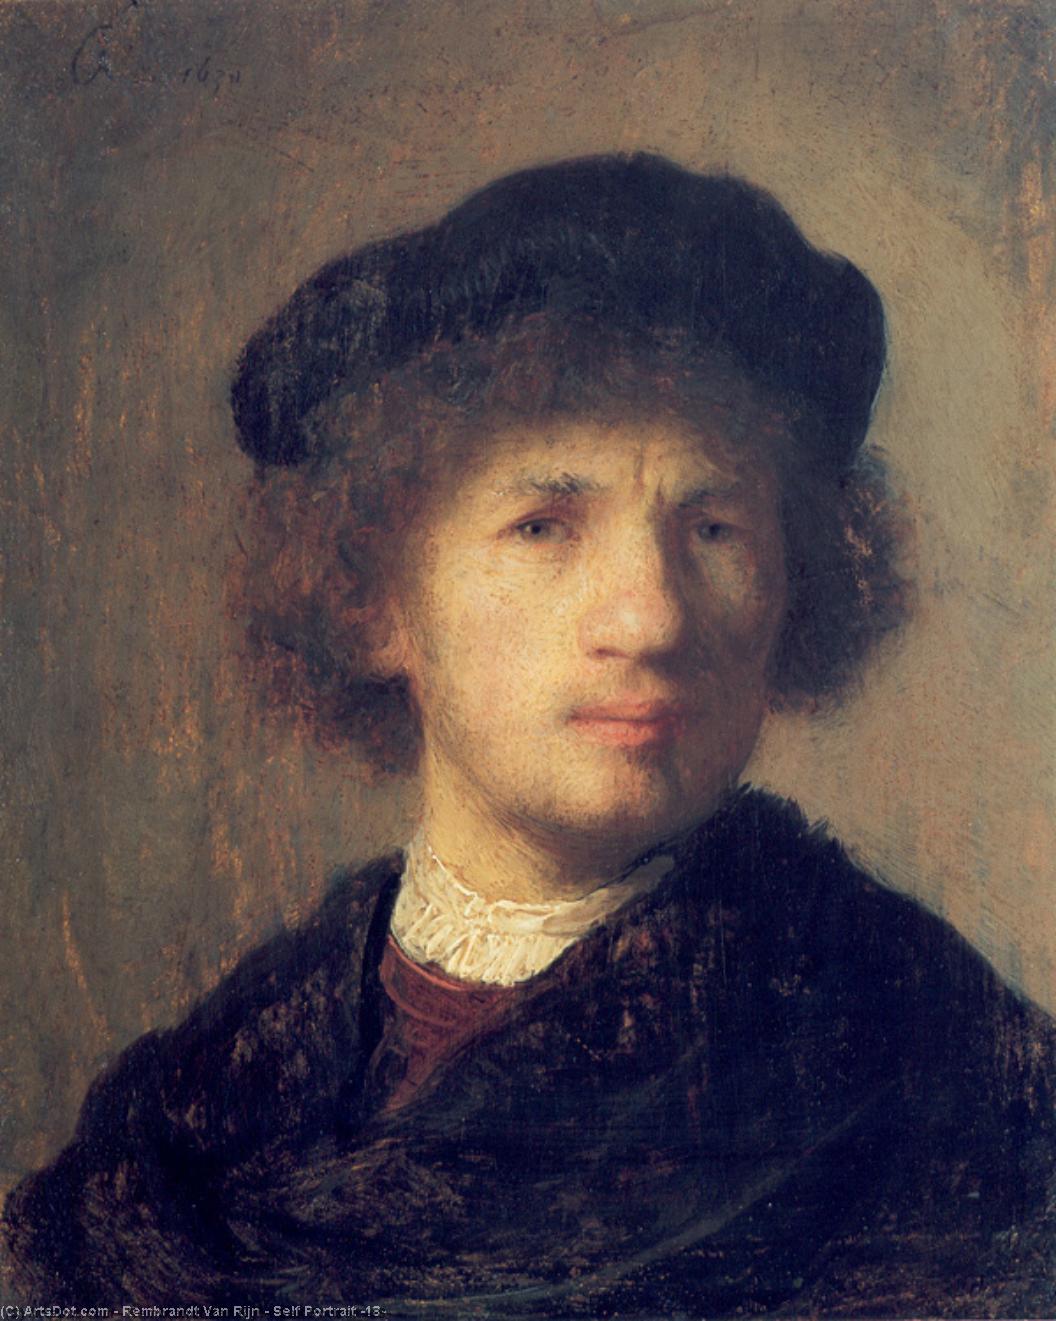 Comprar Reproducciones De Arte Del Museo Auto retrato (18), 1630 de Rembrandt Van Rijn (1606-1669, Netherlands) | ArtsDot.com